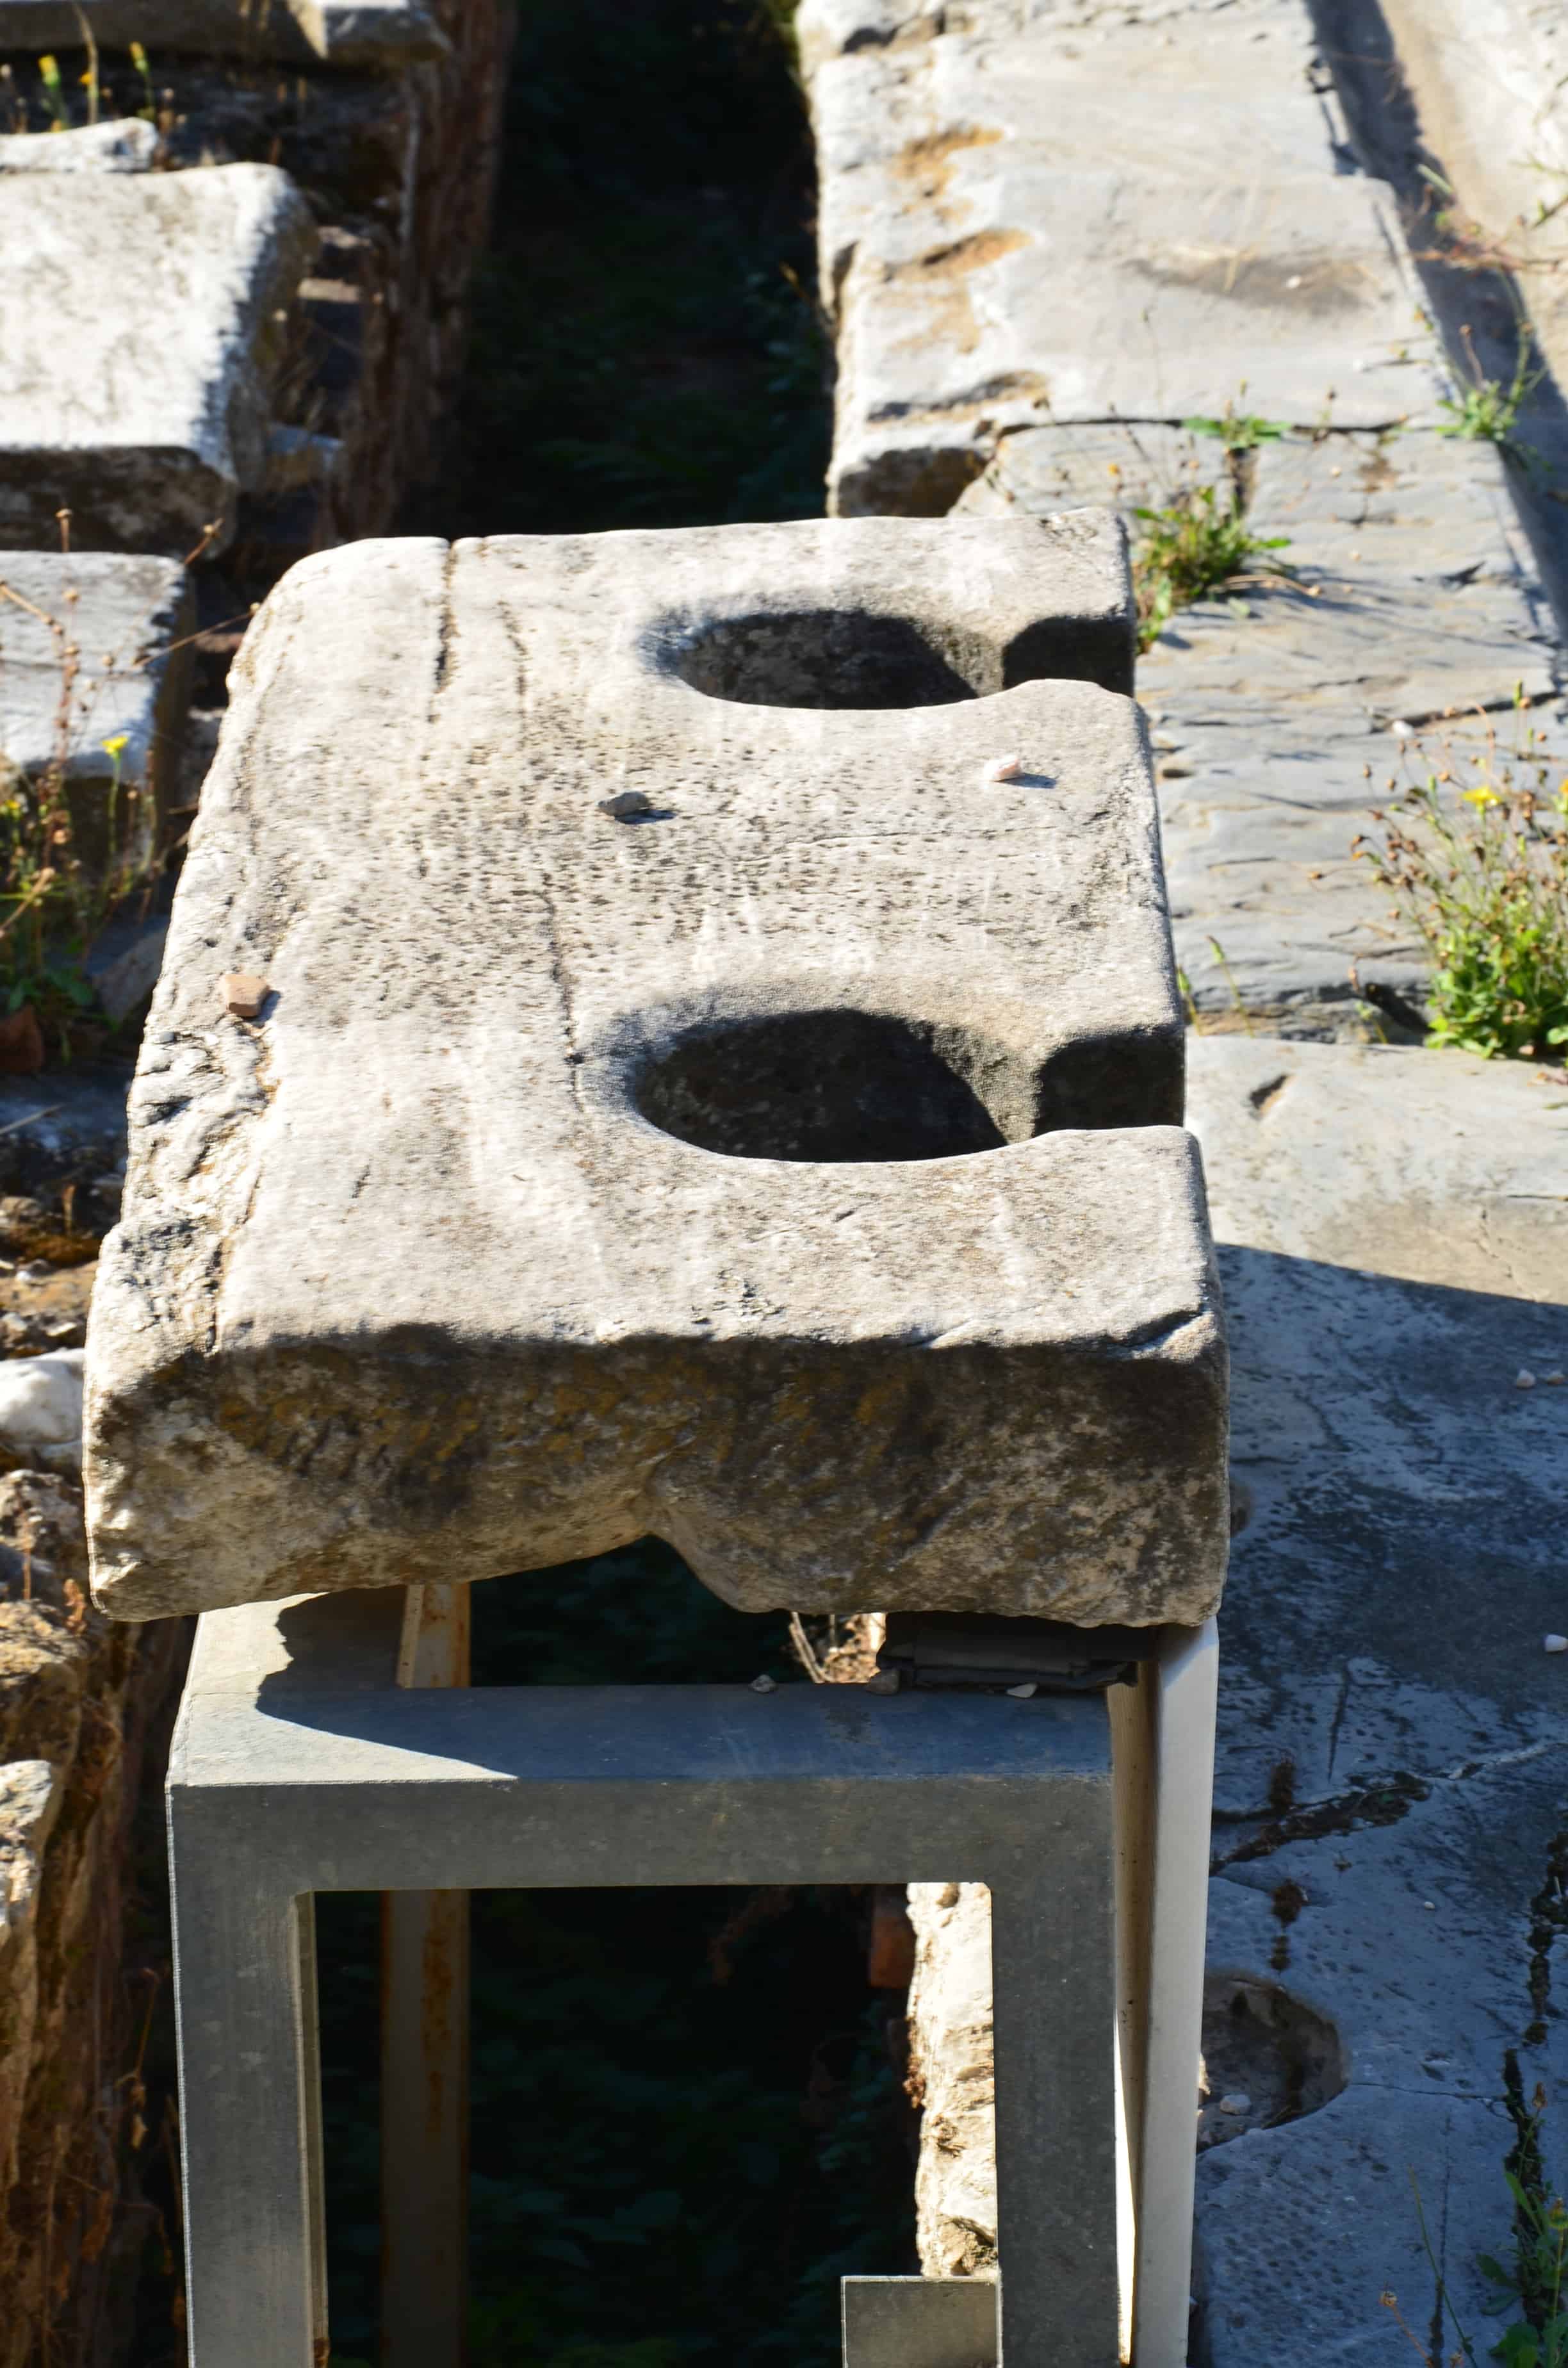 Public latrines at the Roman Agora in Athens, Greece